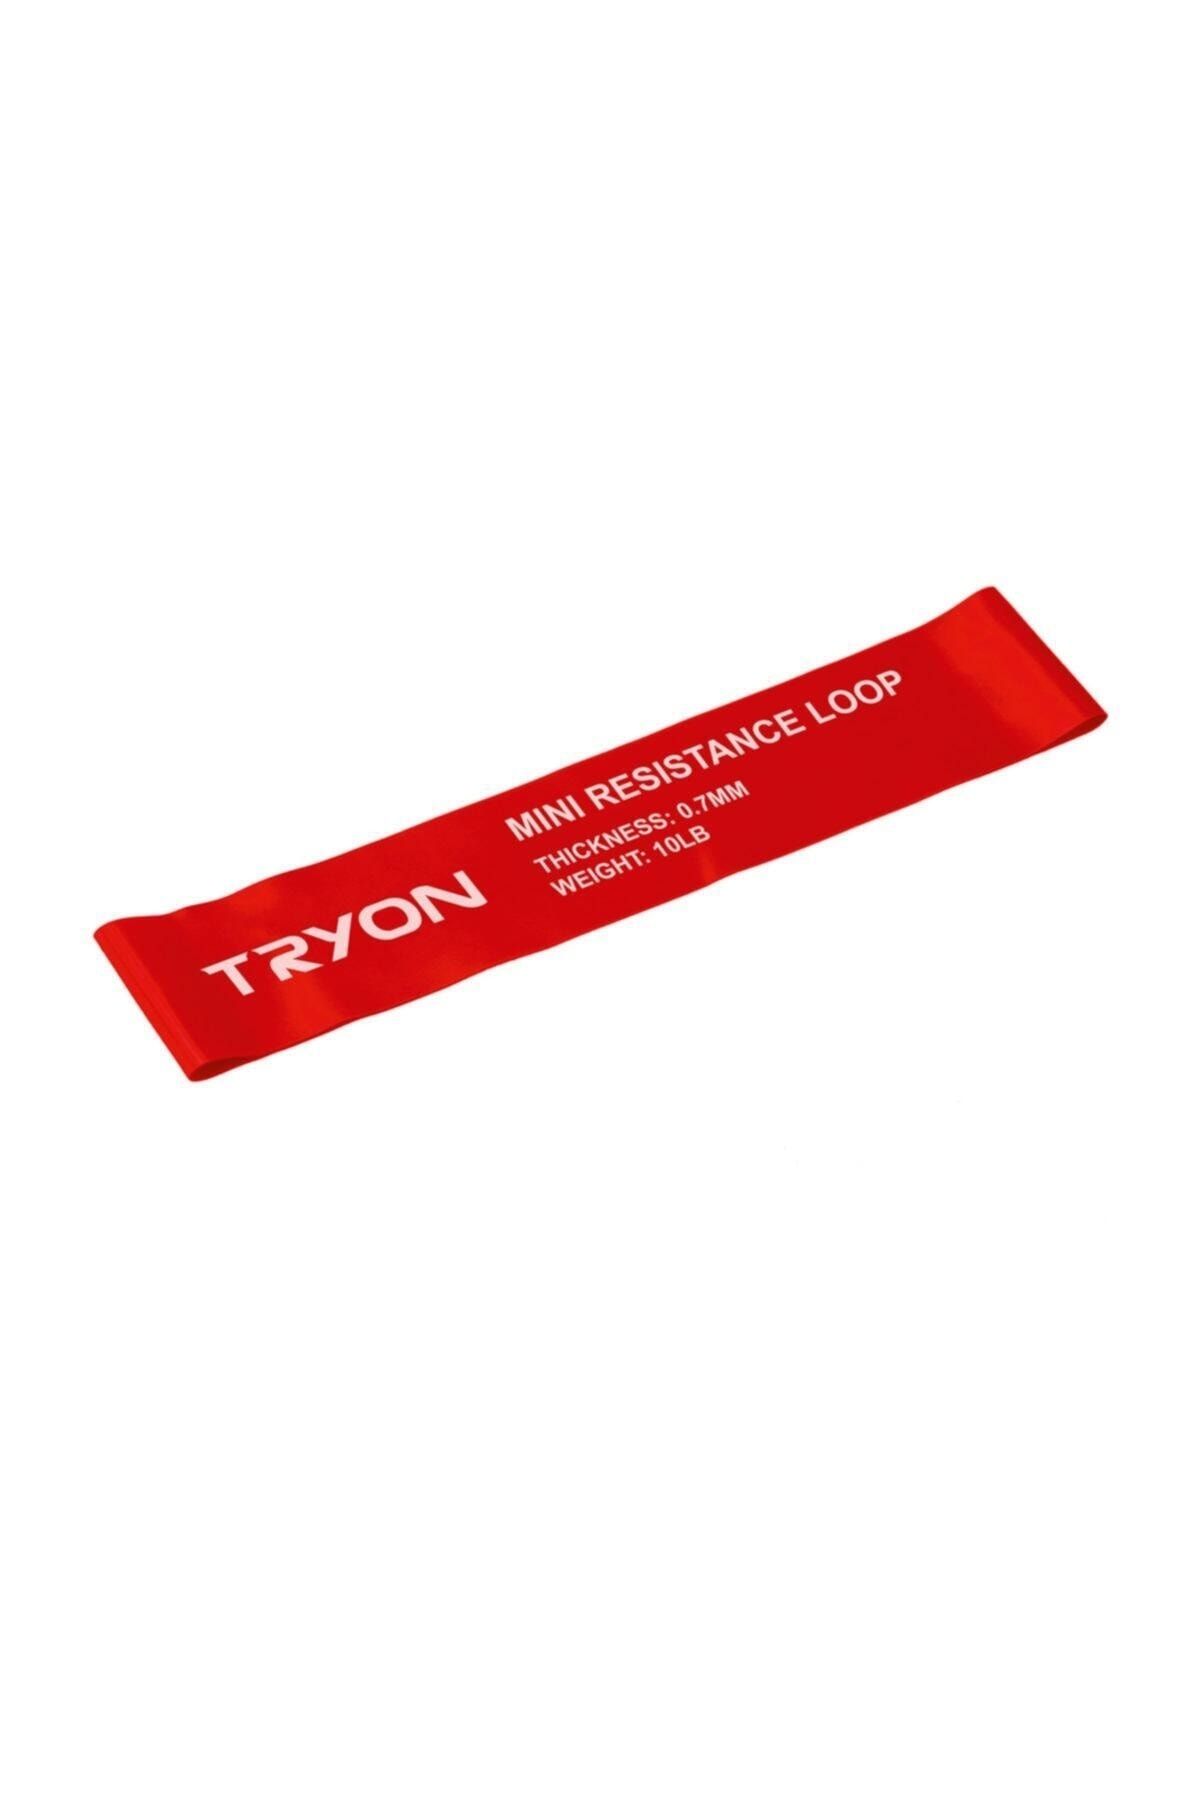 TRYON Güç Lastiği Bnd-107 - 0,7 mm Orta Sert Kırmızı